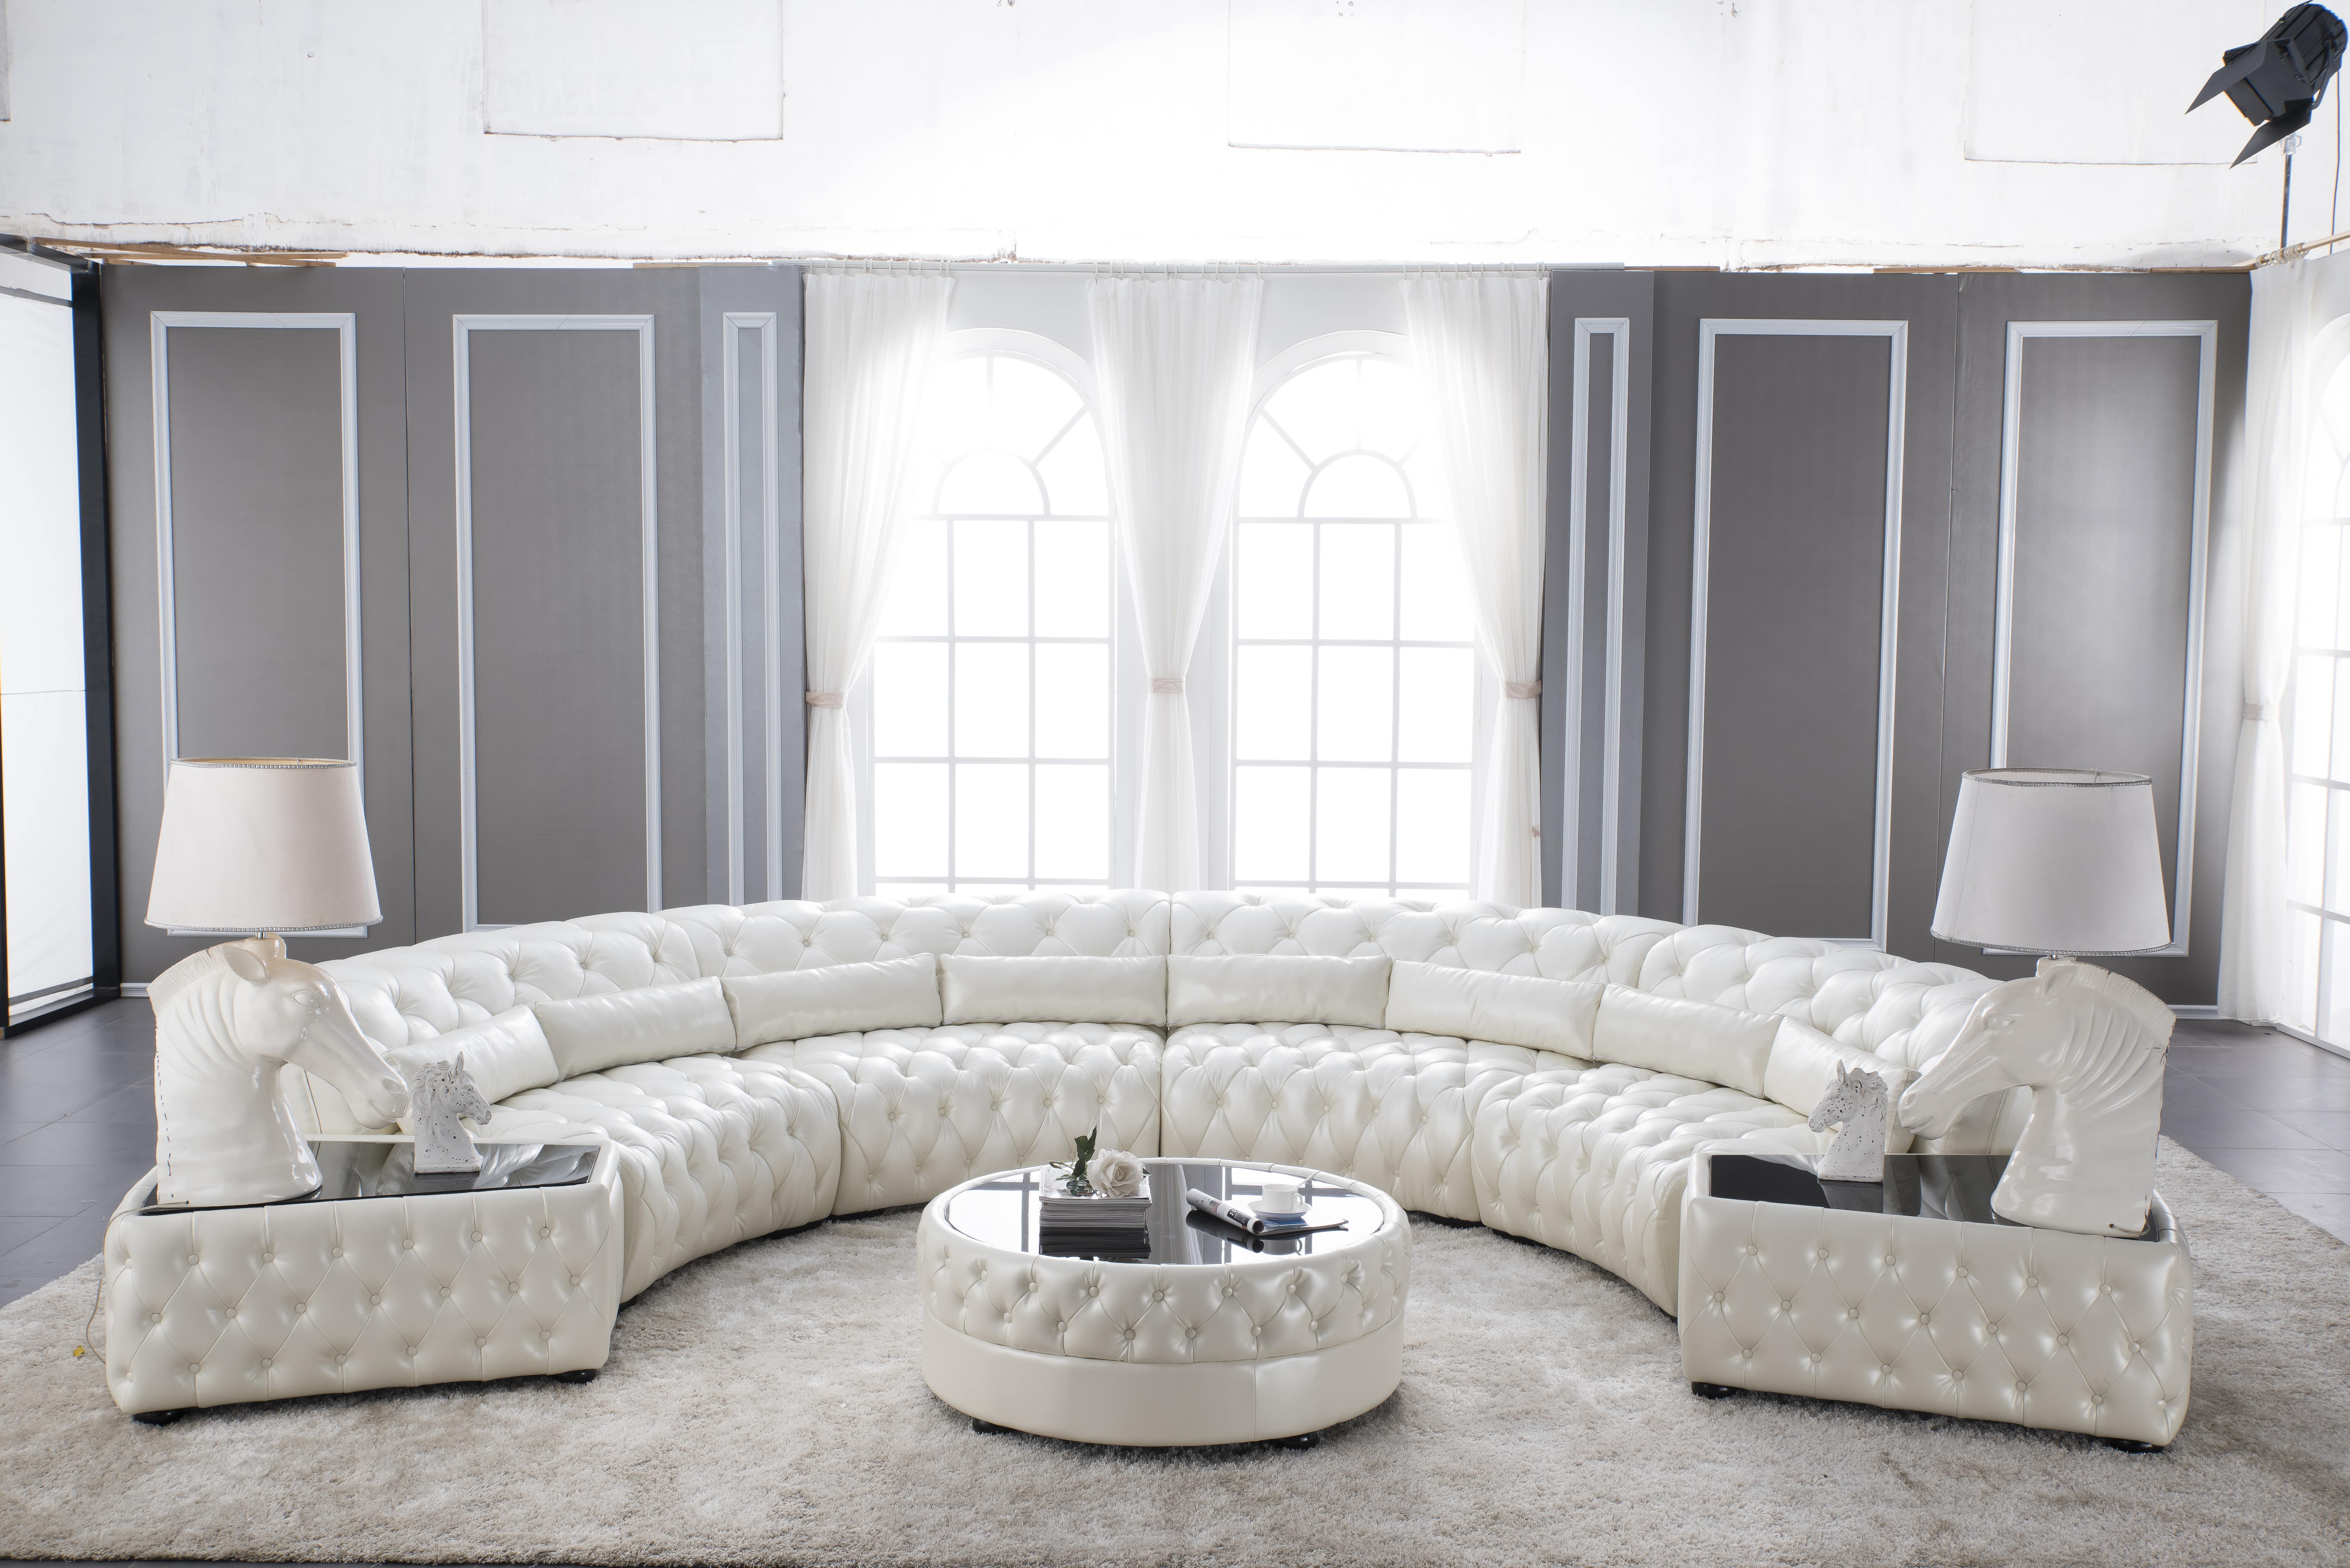 Wohnzimmer Mobel Luxus Geniessen Lionsstar Gmbh